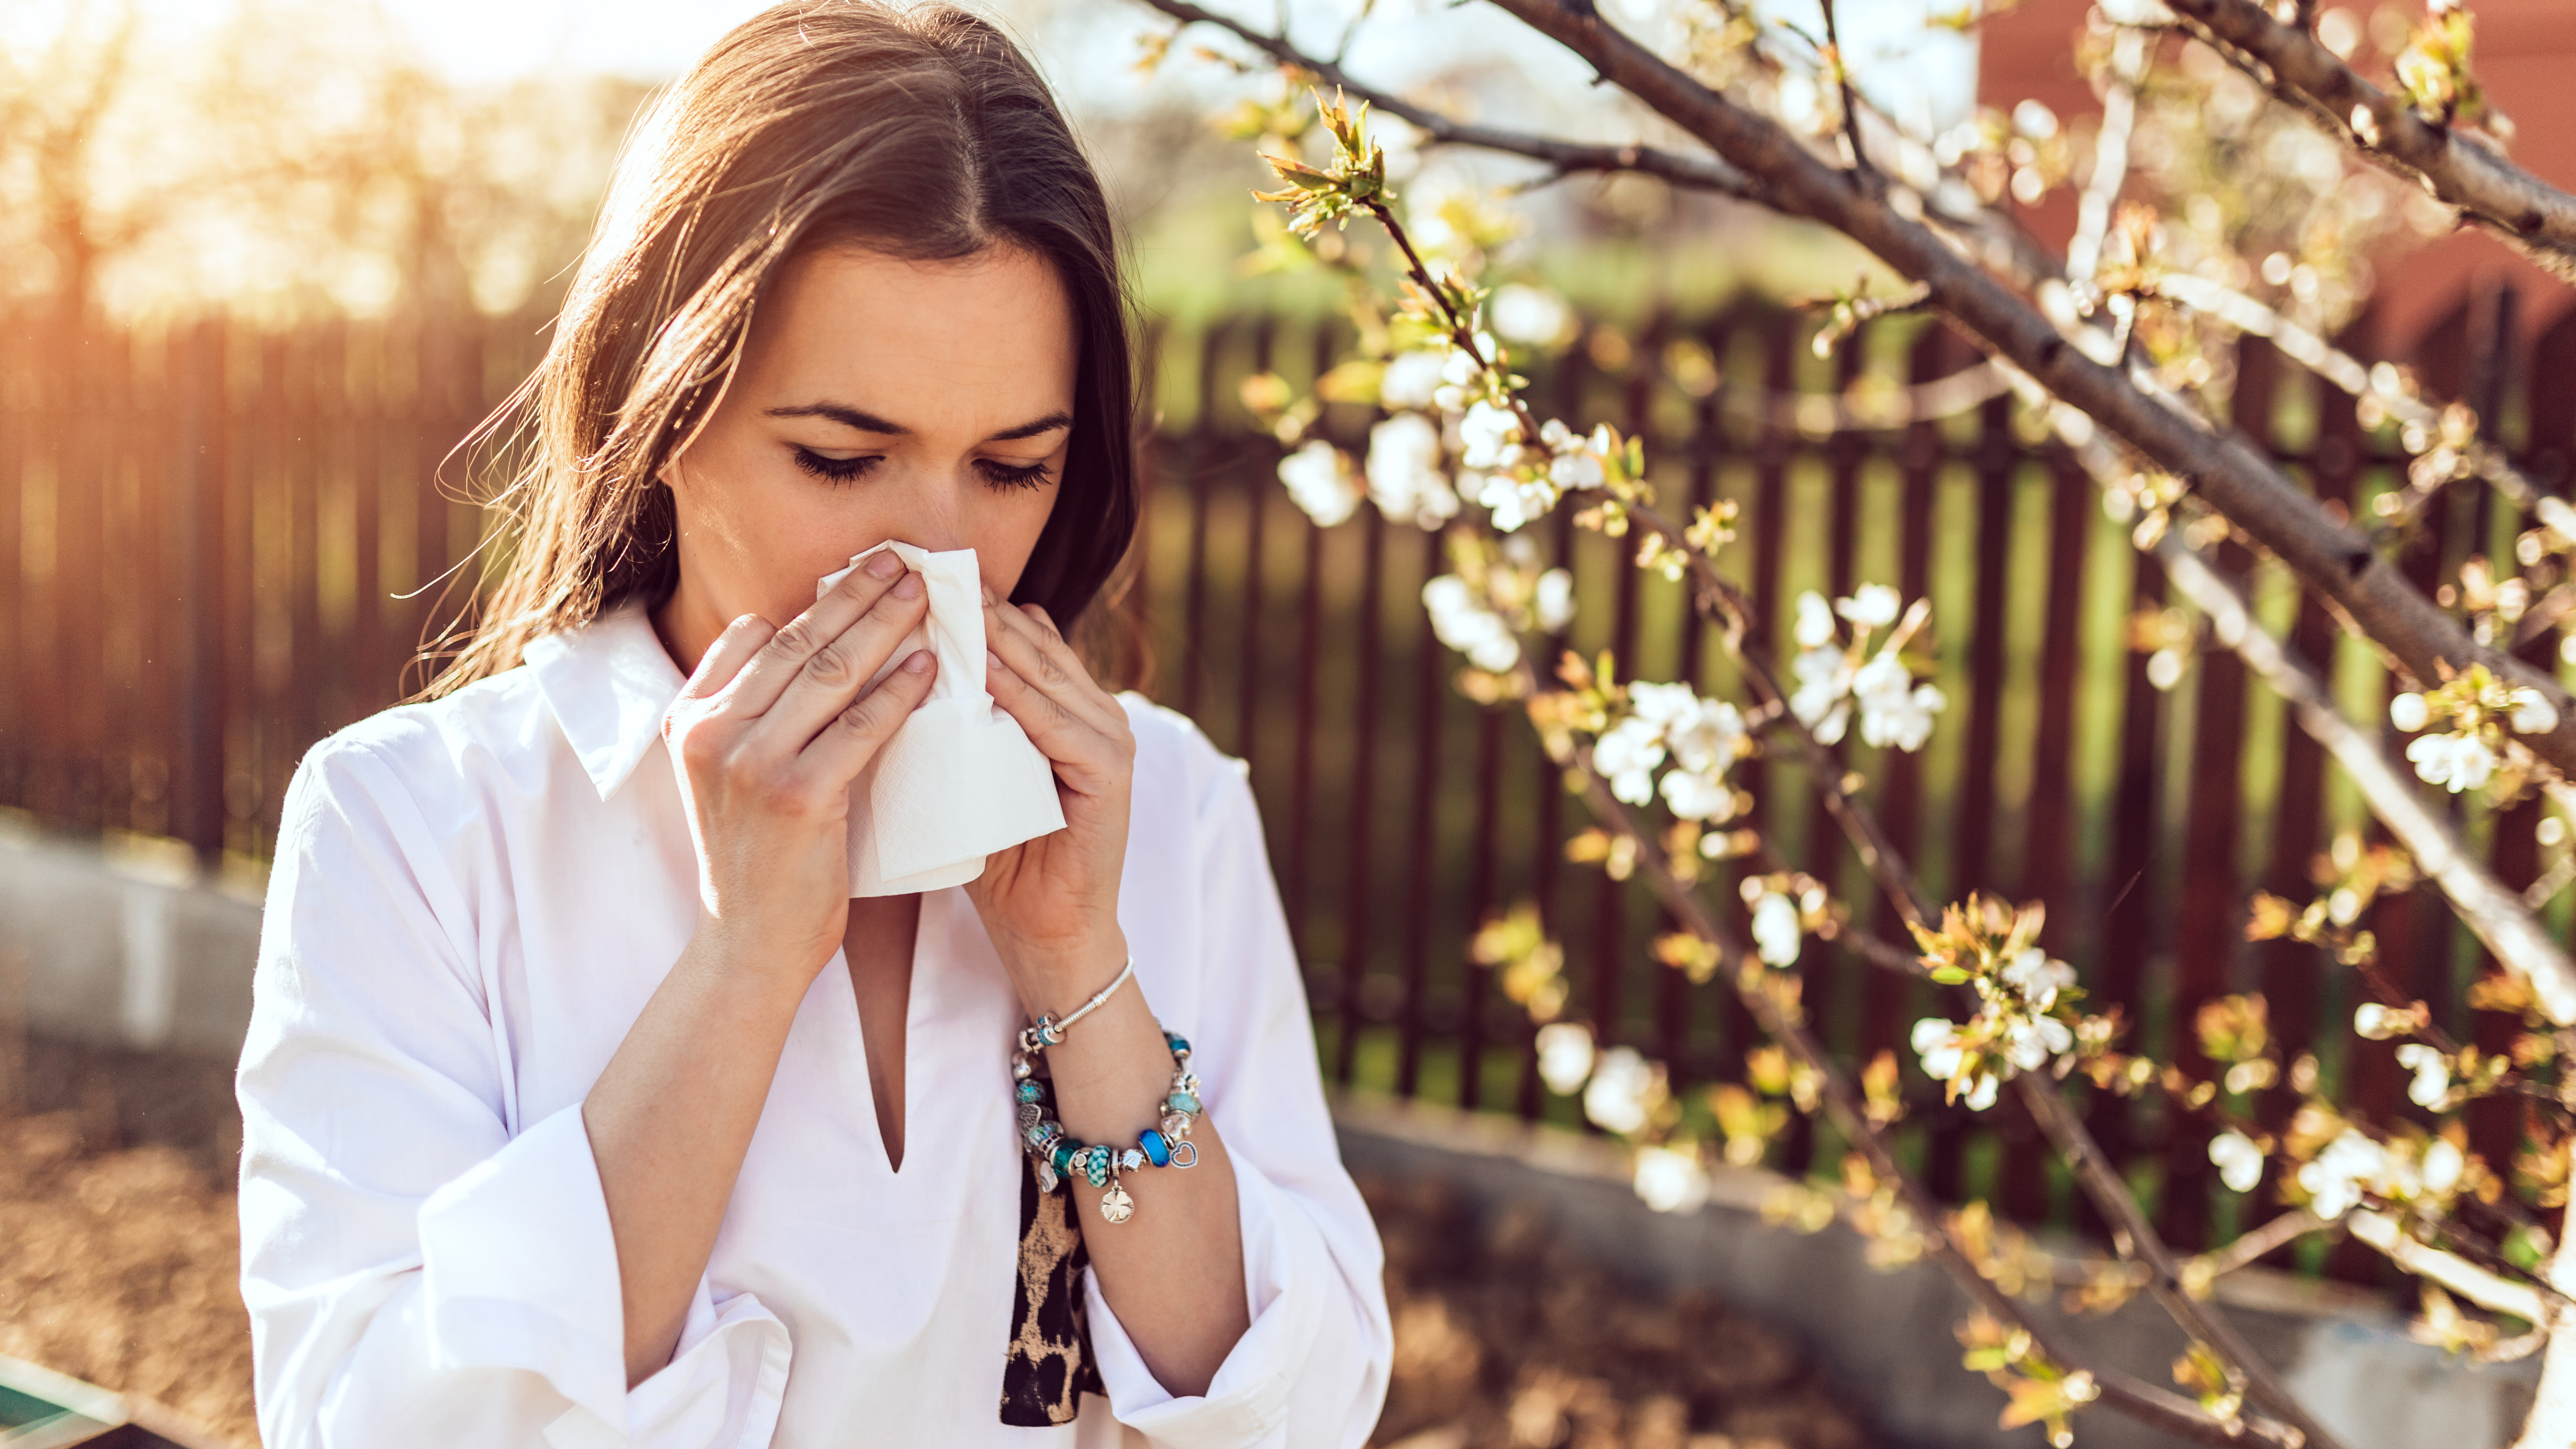 Adiós alergias: siete alimentos para deshacernos de los molestos síntomas